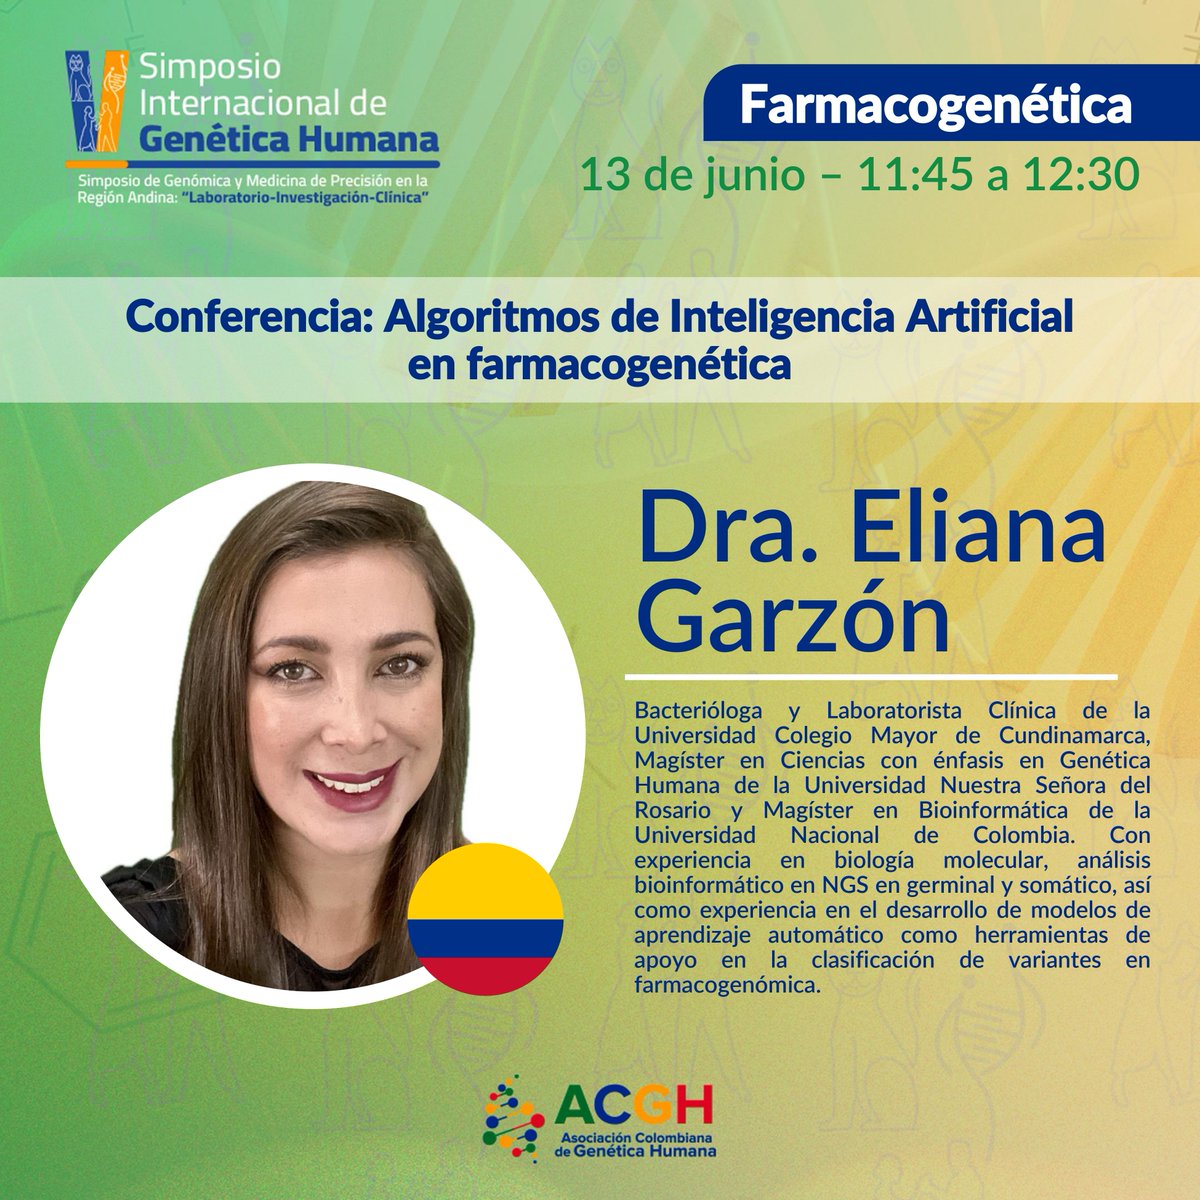 ¡Conoce a los conferencistas del V Simposio Internacional de Genética Humana! 
¡Te presentamos a la Dra. Eliana Garzón y su imperdible charla 'Algoritmos de inteligencia artificial en farmacogenética', exploraremos las últimas tendencias en farmacogenómica. #SimposioACGH2024